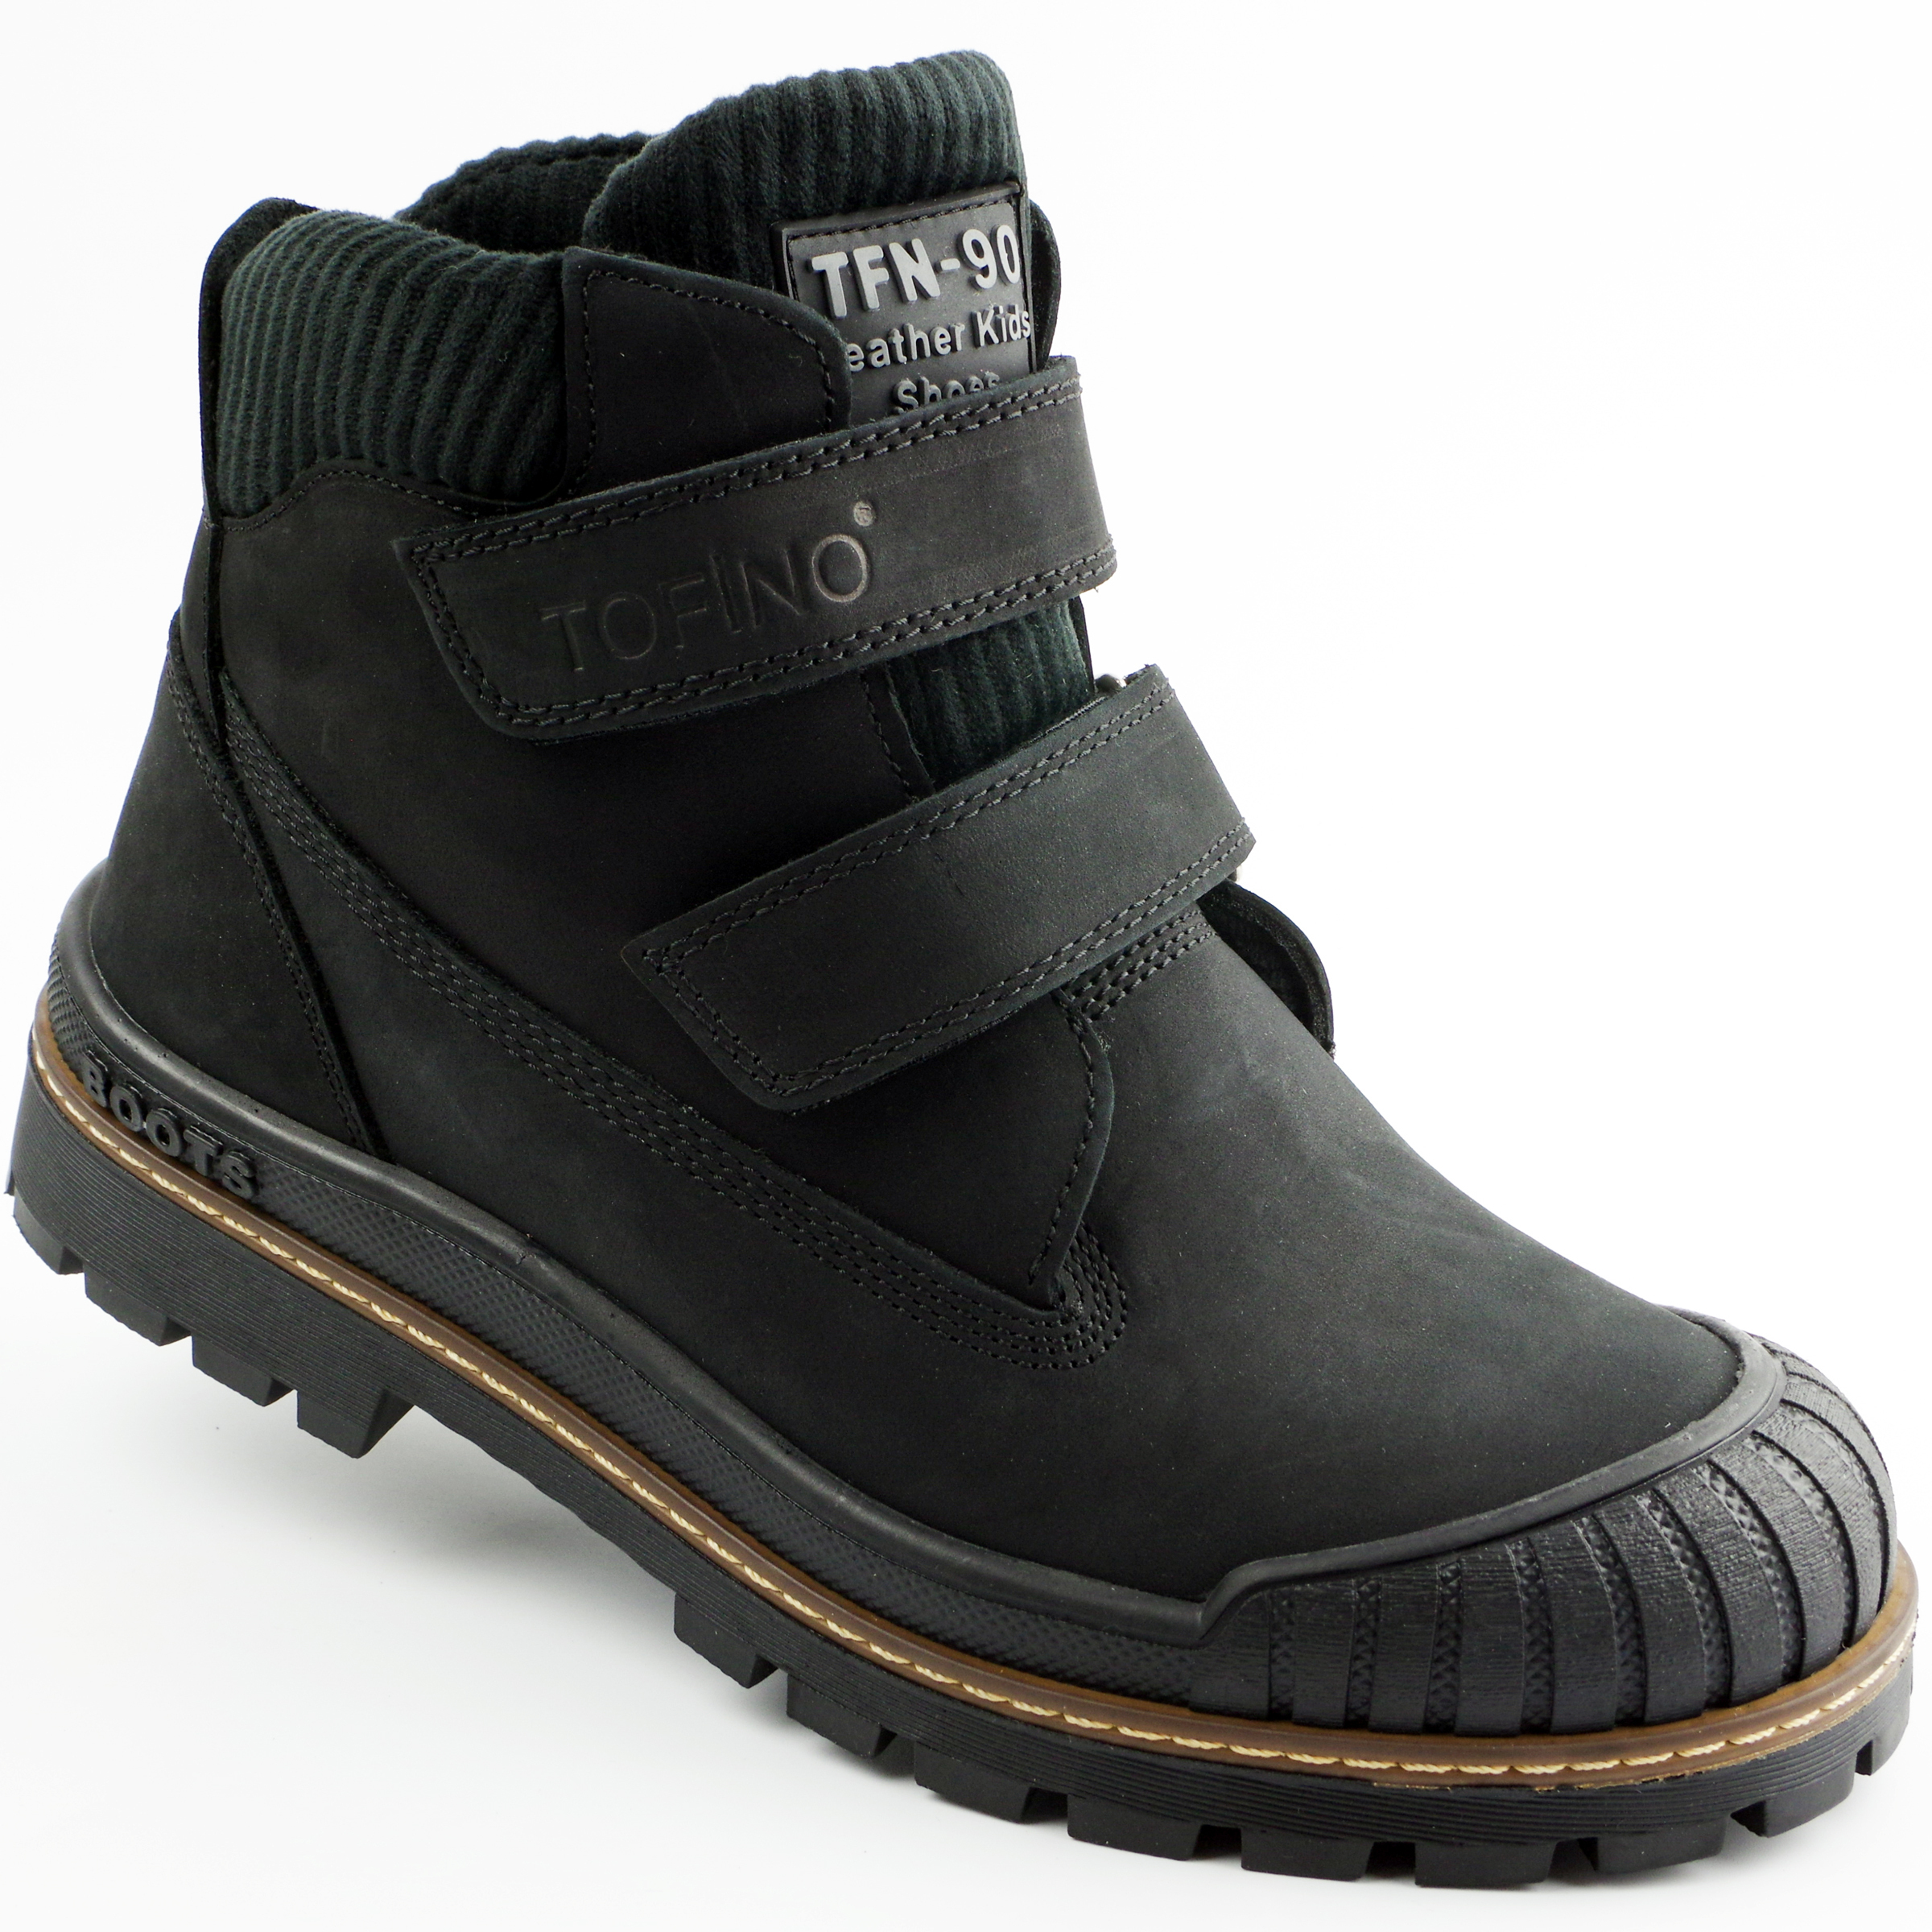 Ботинки подростковые (2142) материал Нубук, цвет Черный  для мальчиков 37-40 размеры – Sole Kids. Фото 1